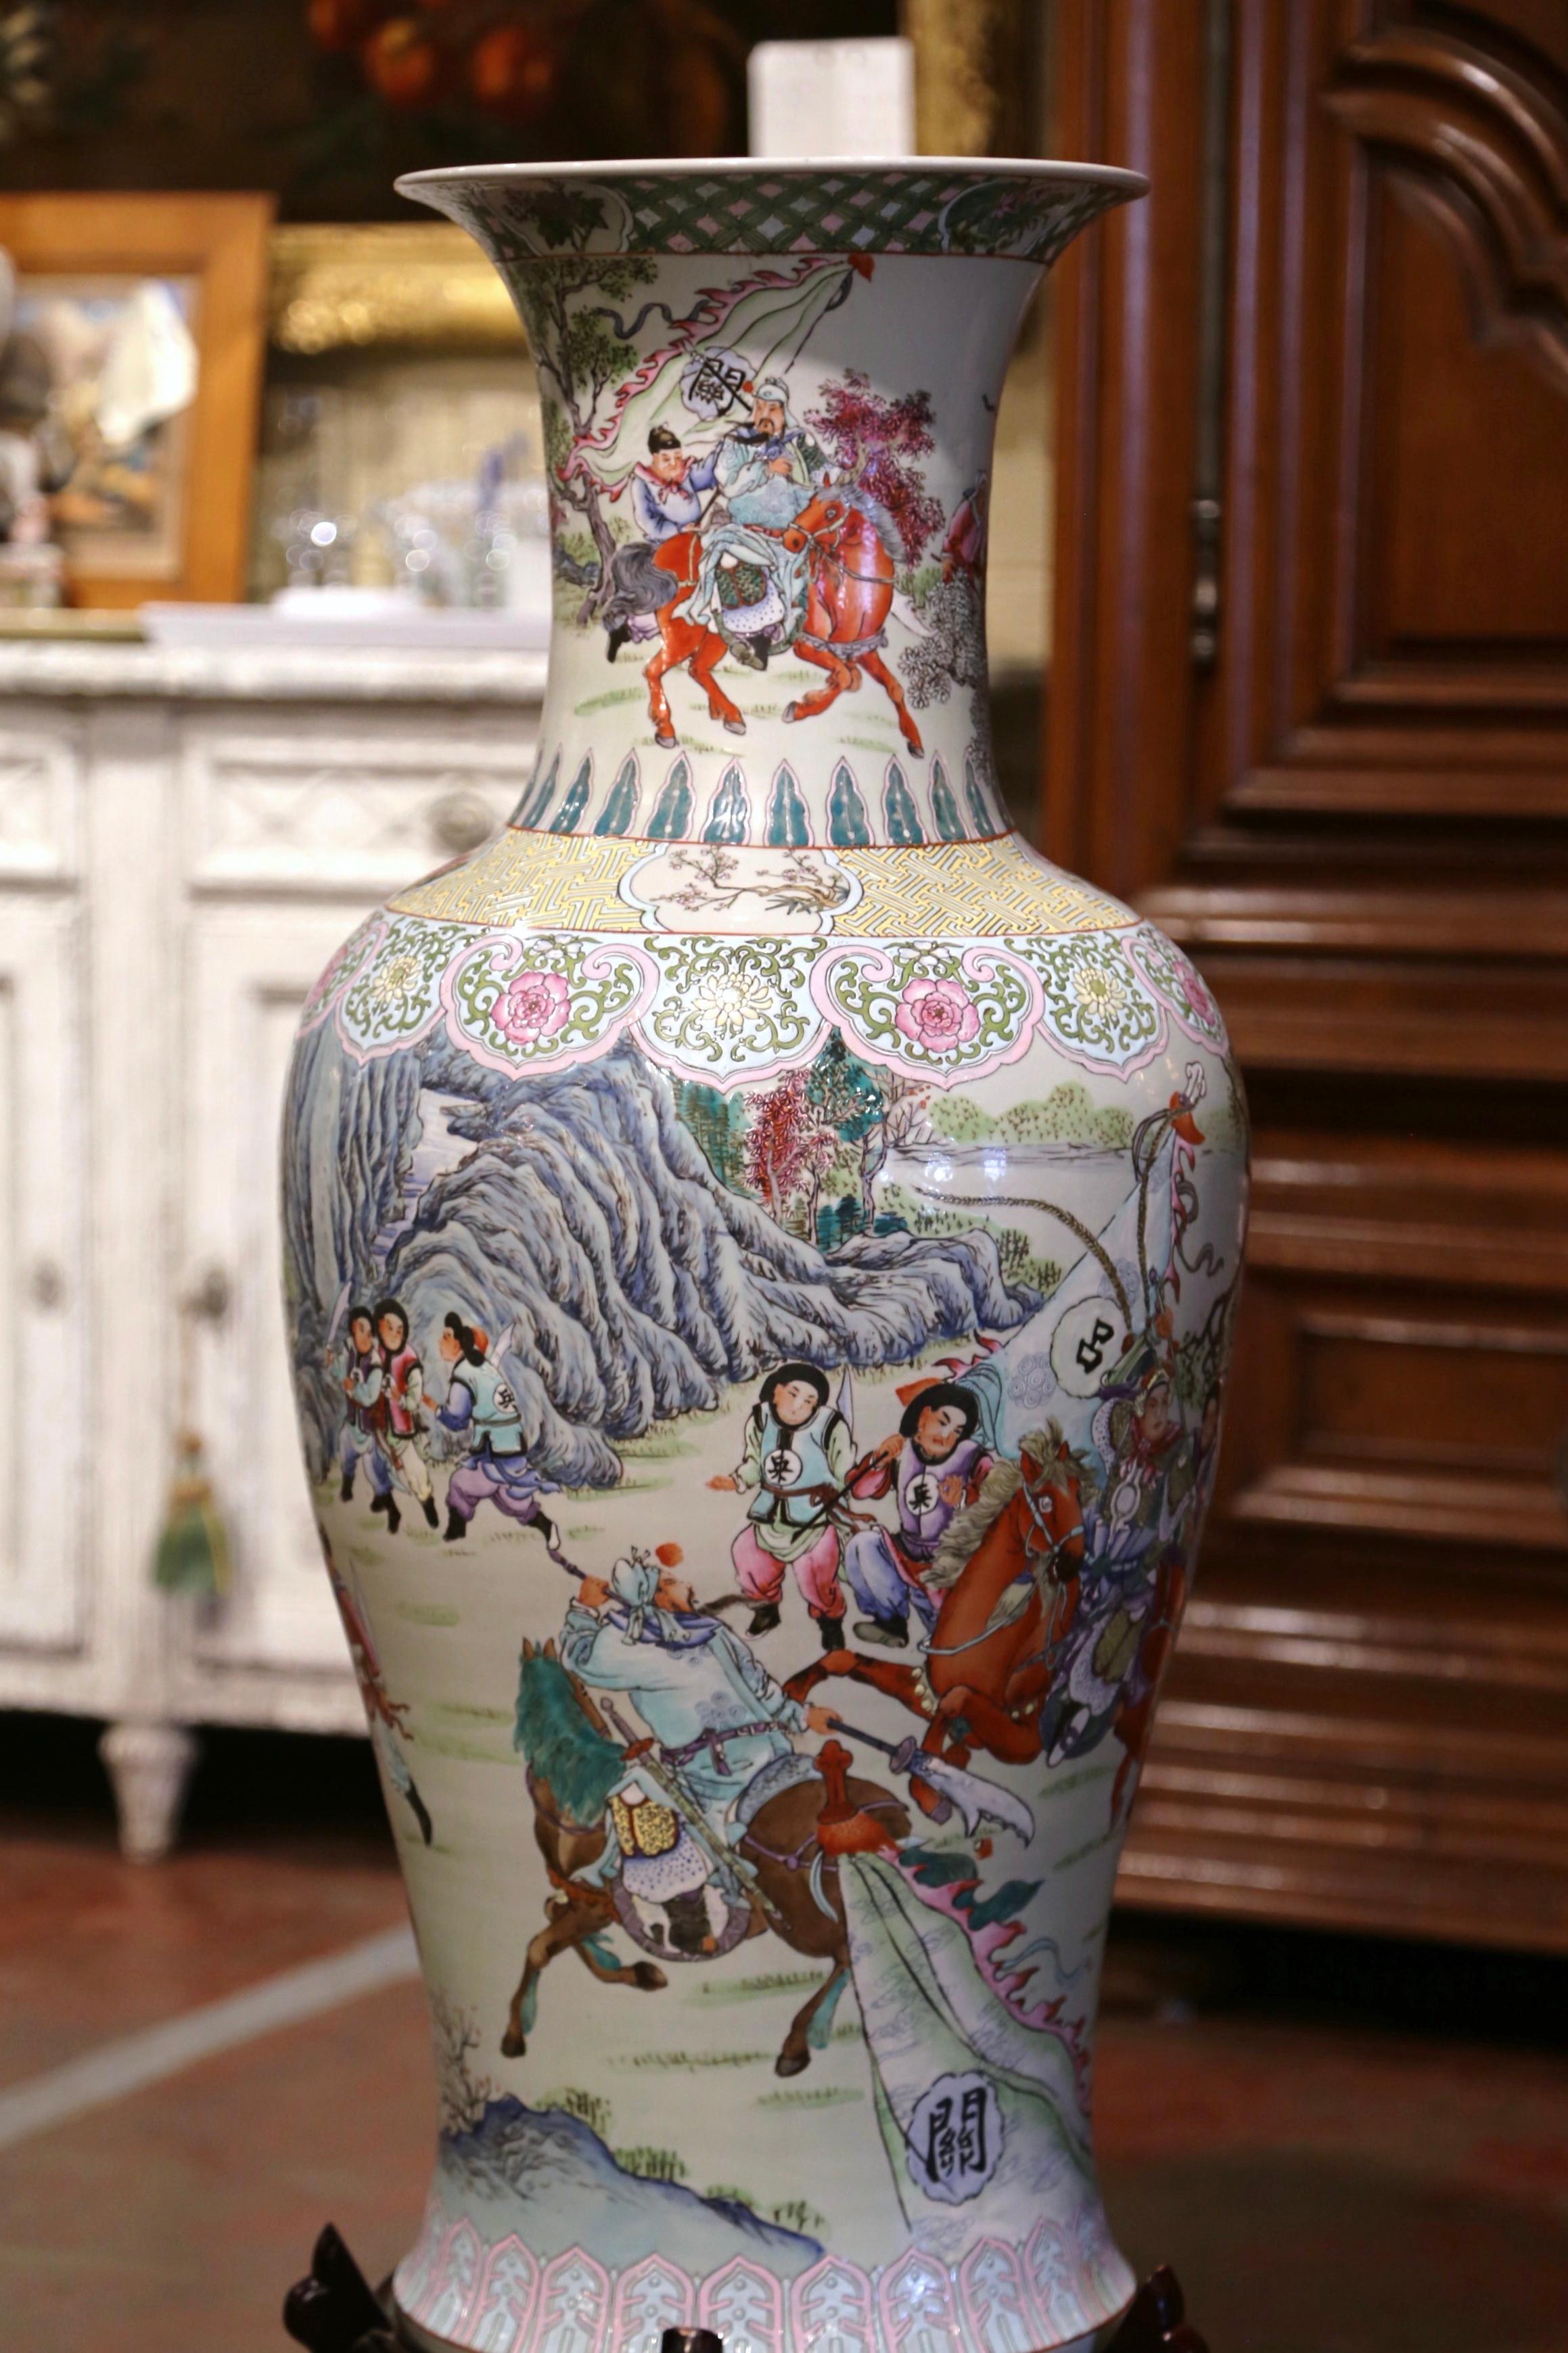 Fabriqué en Chine vers 1950, et reposant sur une base en bois sculpté, ce grand vase en porcelaine est de forme ronde avec un élégant col long et large. L'urne antique colorée est décorée de motifs figuratifs peints à la main représentant des